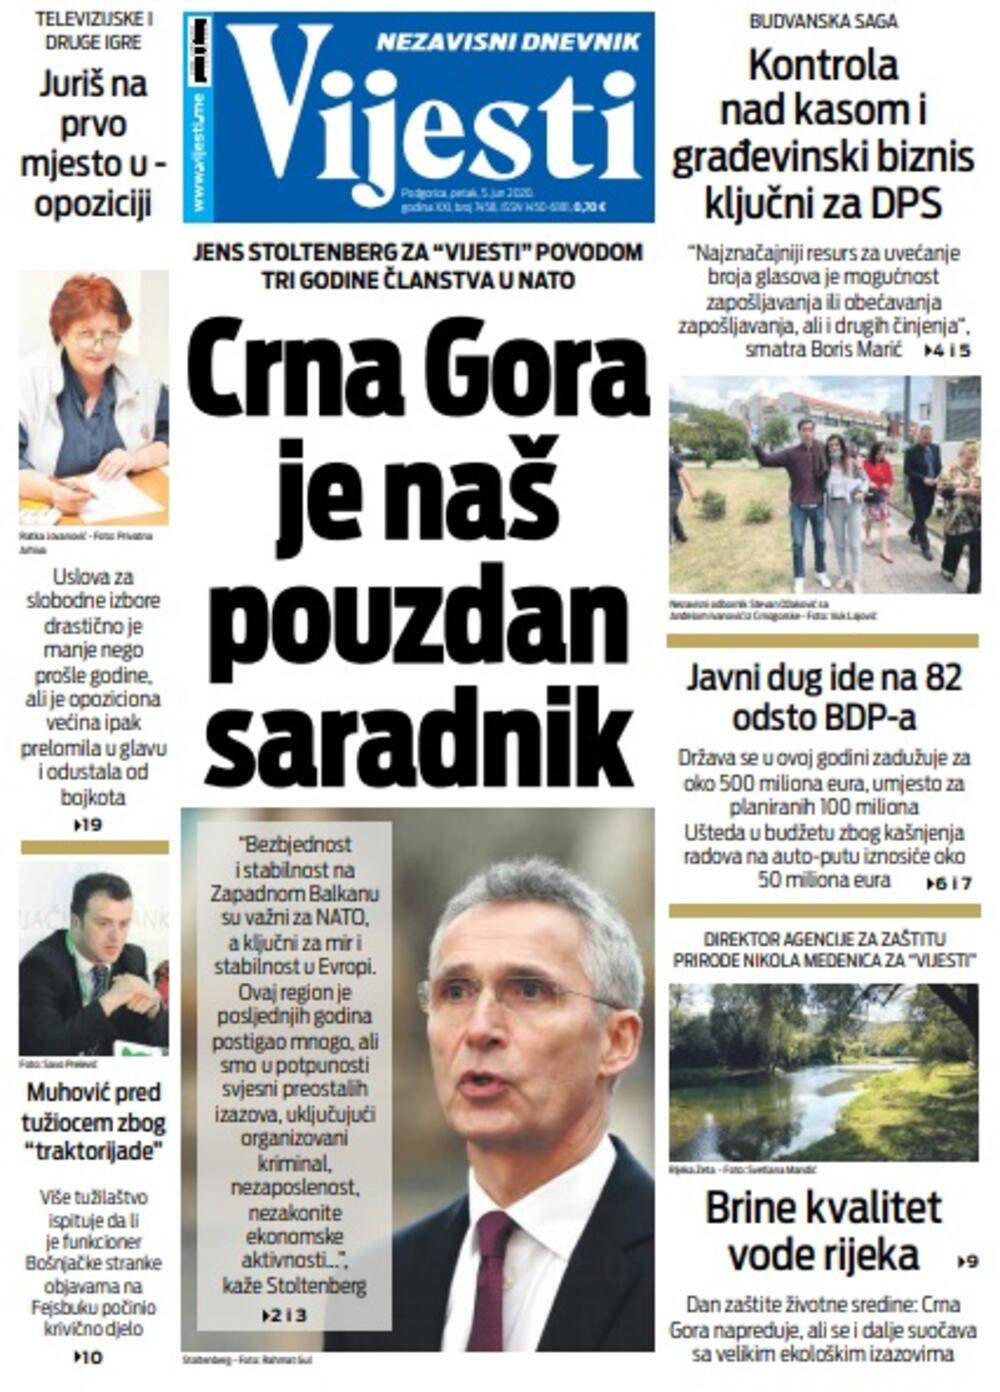 Naslovna strana "Vijesti" za petak 5. jun 2020. godine, Foto: Vijesti